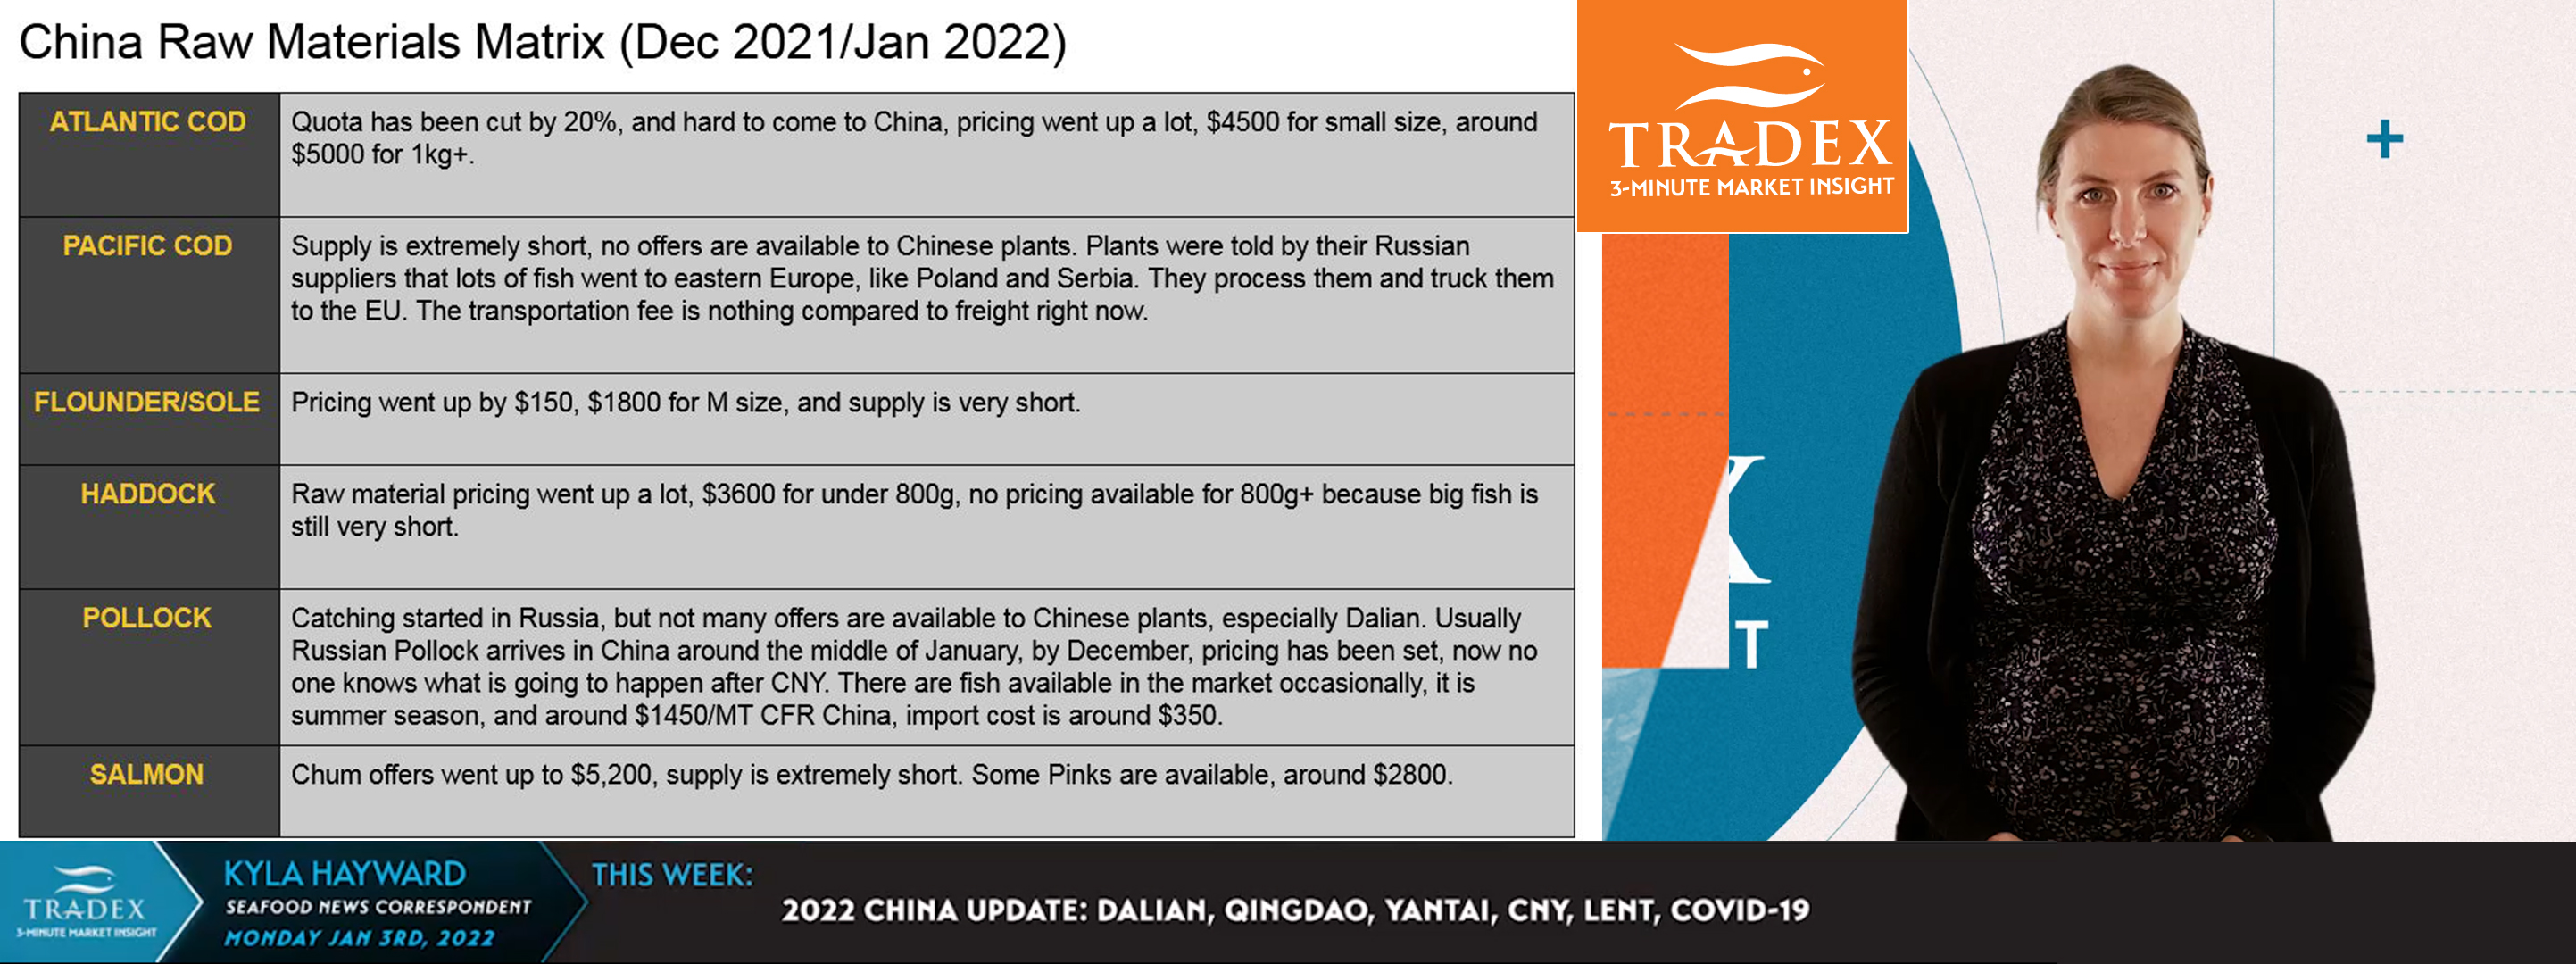 2022 CHINA UPDATE